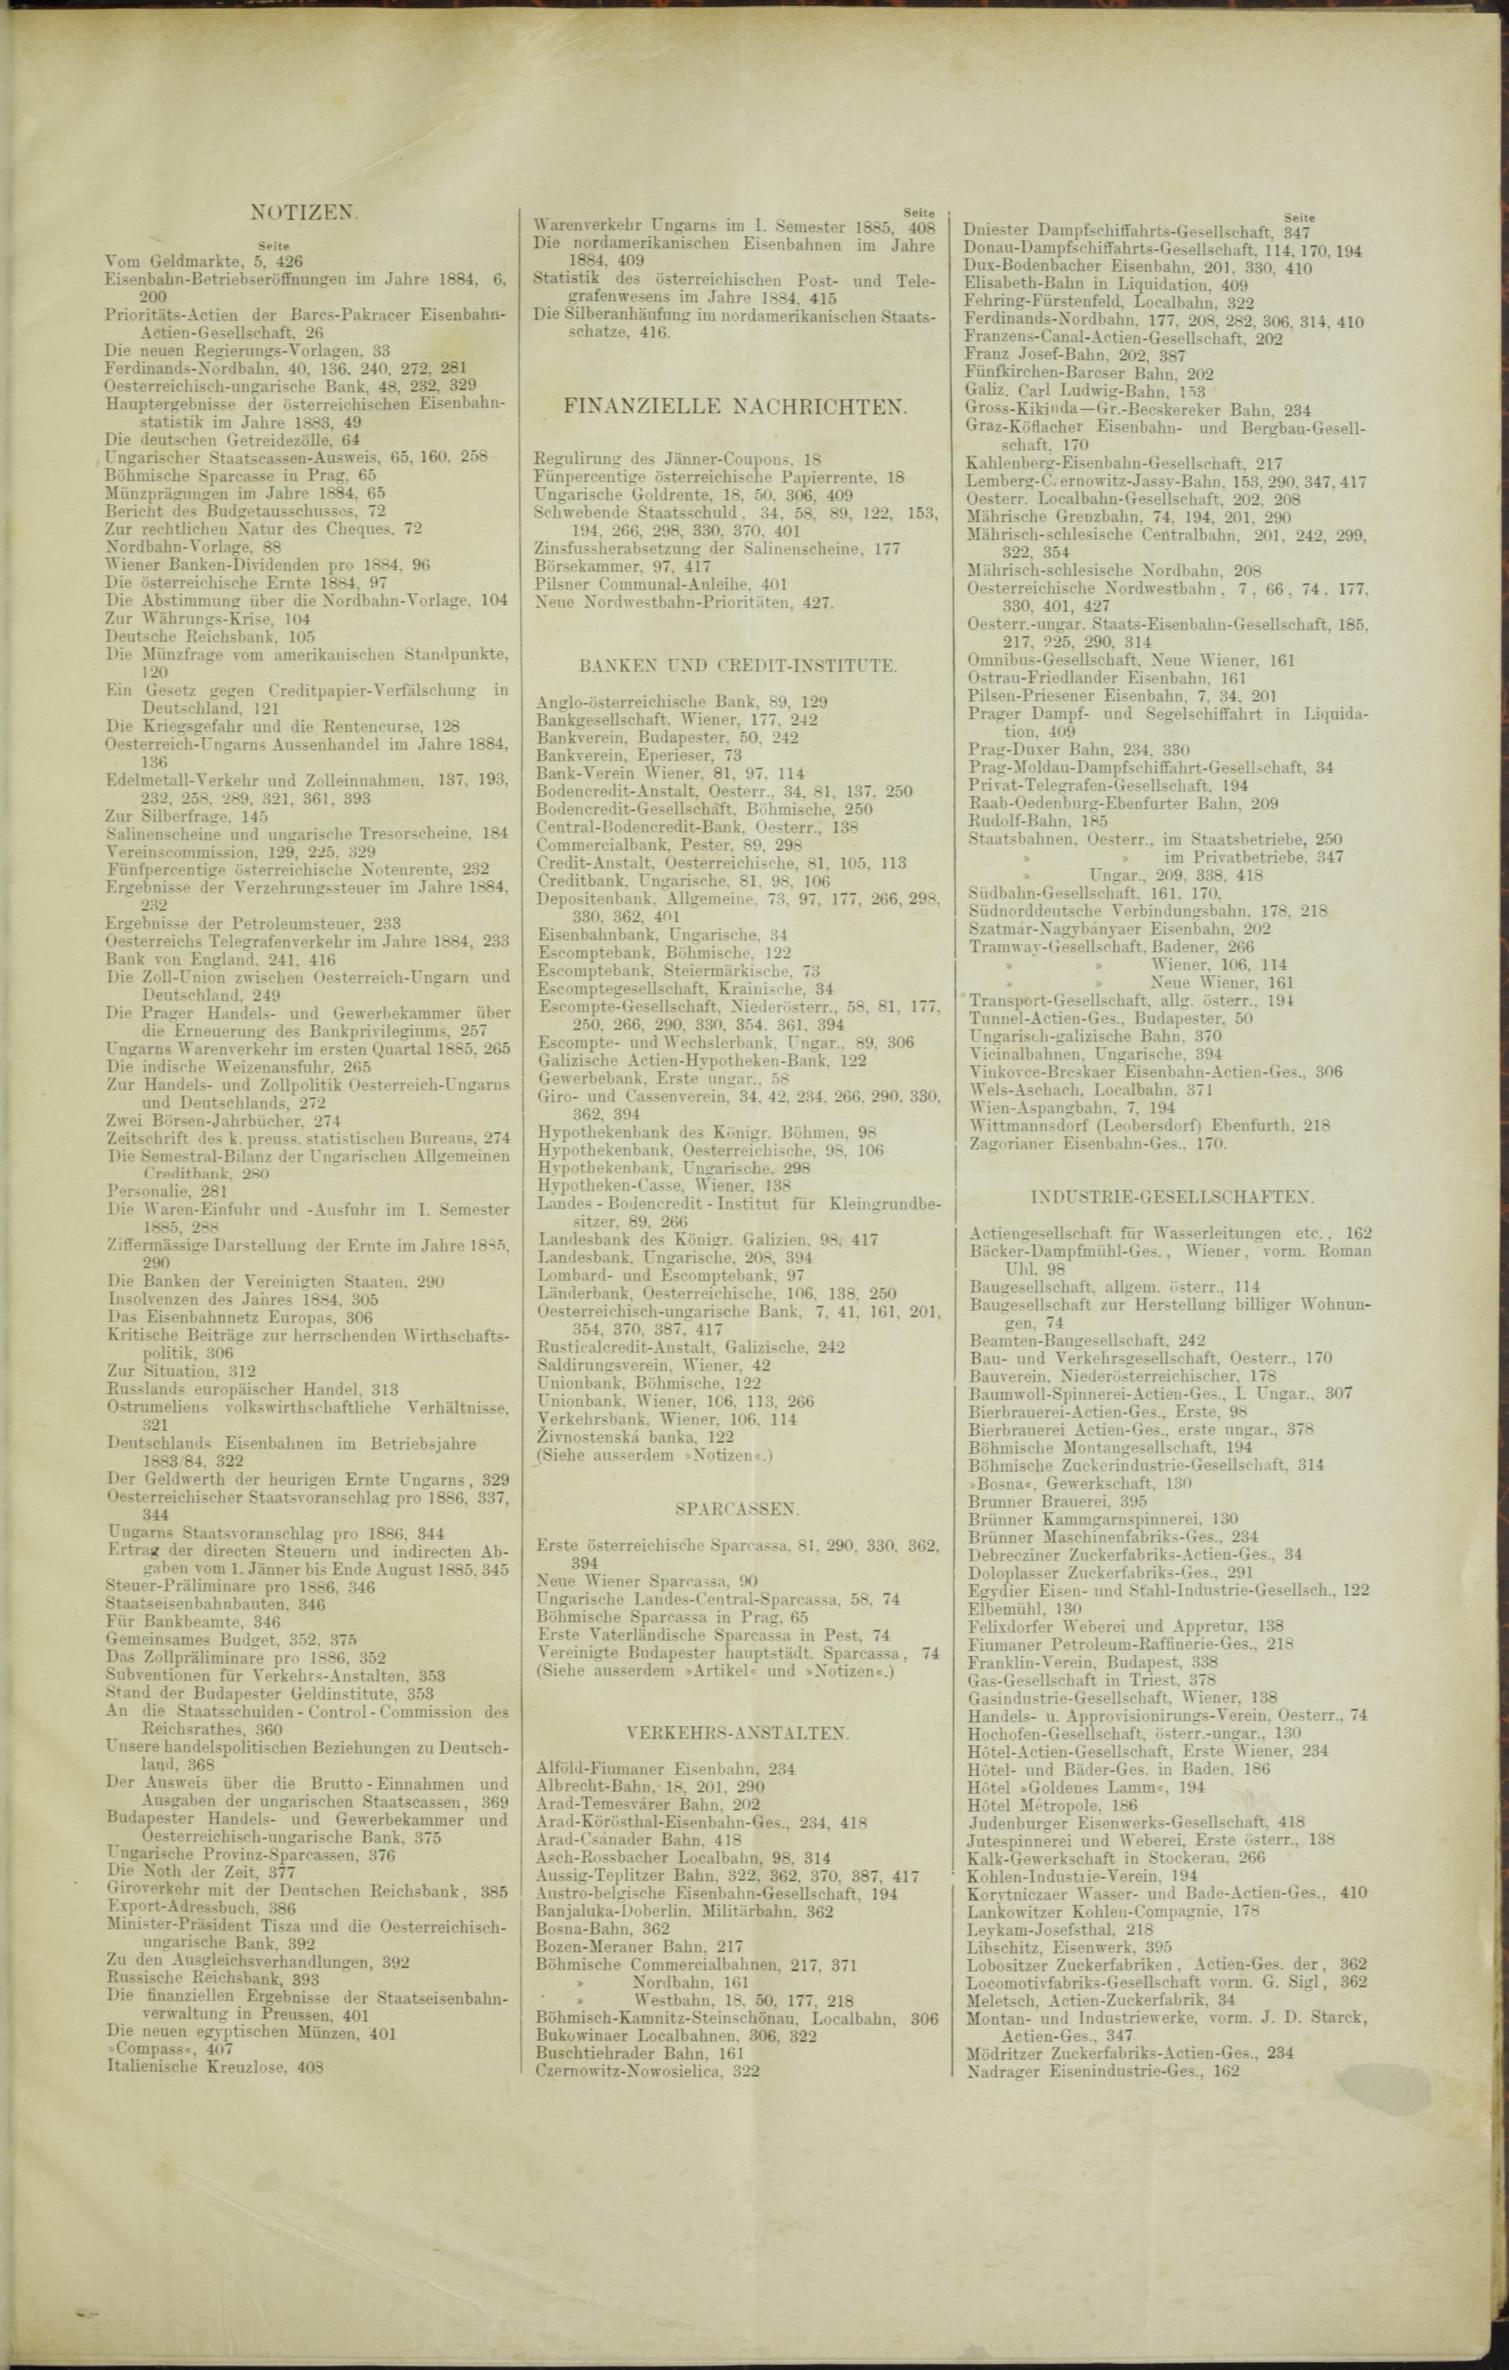 Der Tresor 20.08.1885 - Seite 11